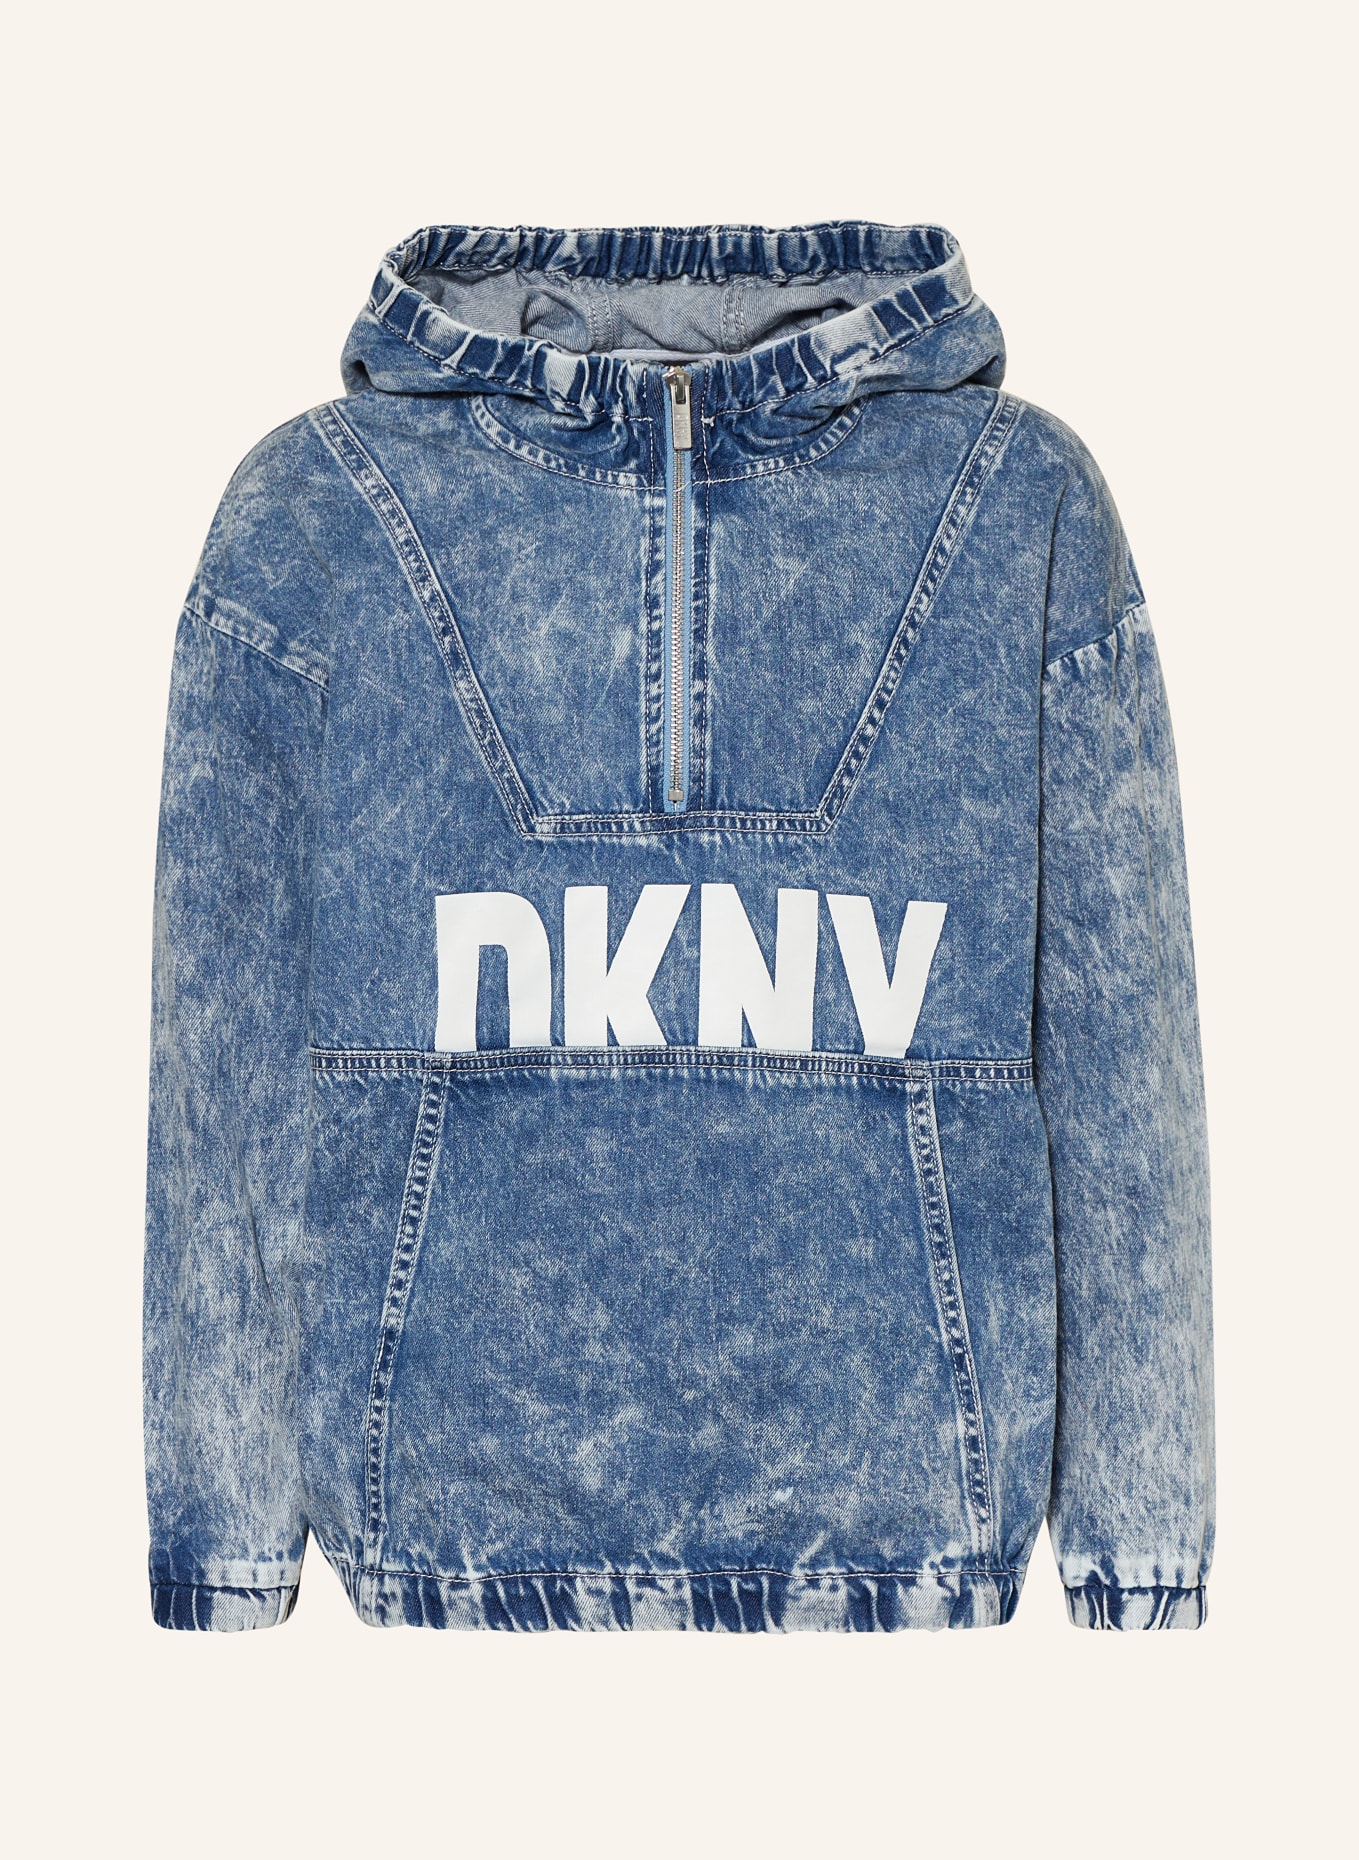 DKNY Overjacket in Jeansoptik, Farbe: DUNKELBLAU/ WEISS (Bild 1)